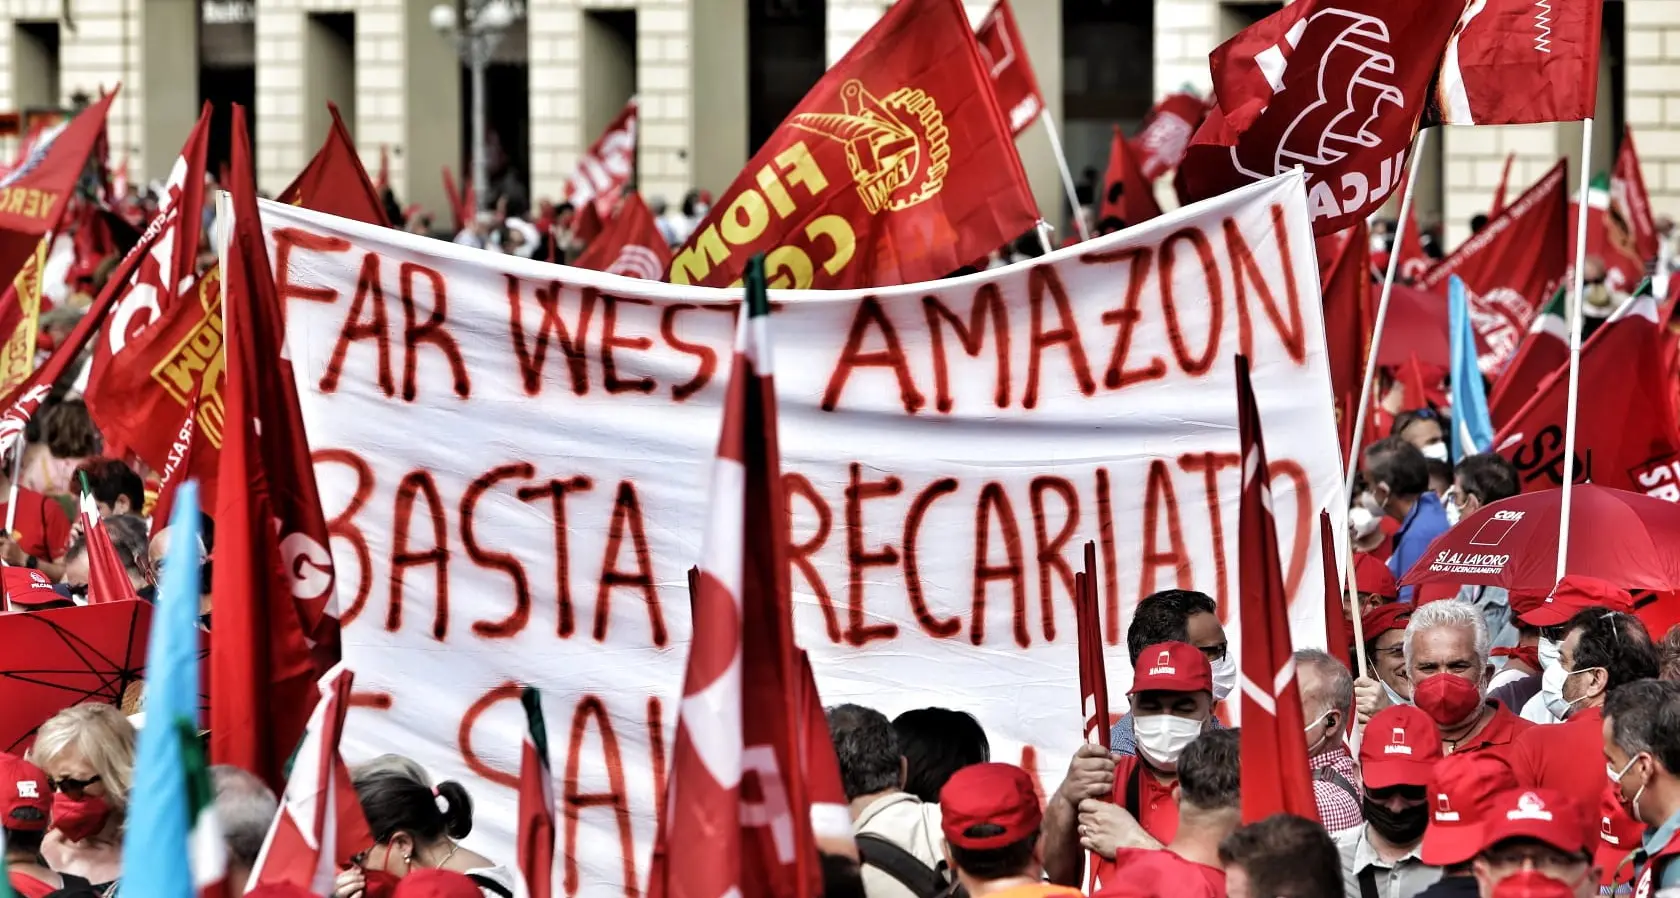 Amazon: studiare, capire, protestare